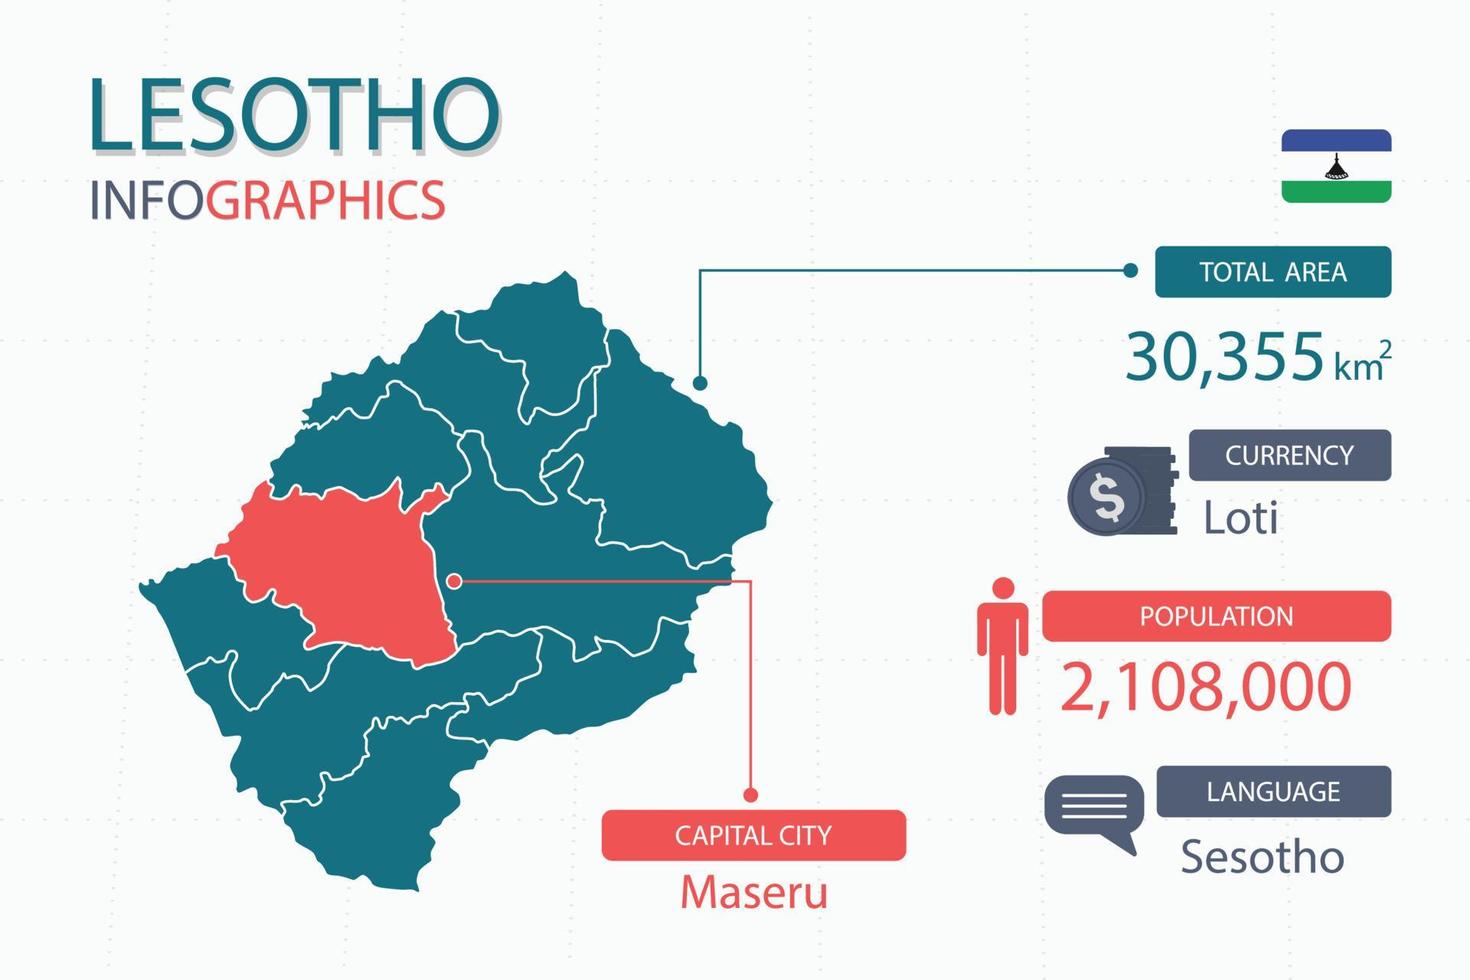 Lesotho kaart infographic elementen met scheiden van rubriek is totaal gebieden, munteenheid, allemaal populaties, taal en de hoofdstad stad in deze land. vector